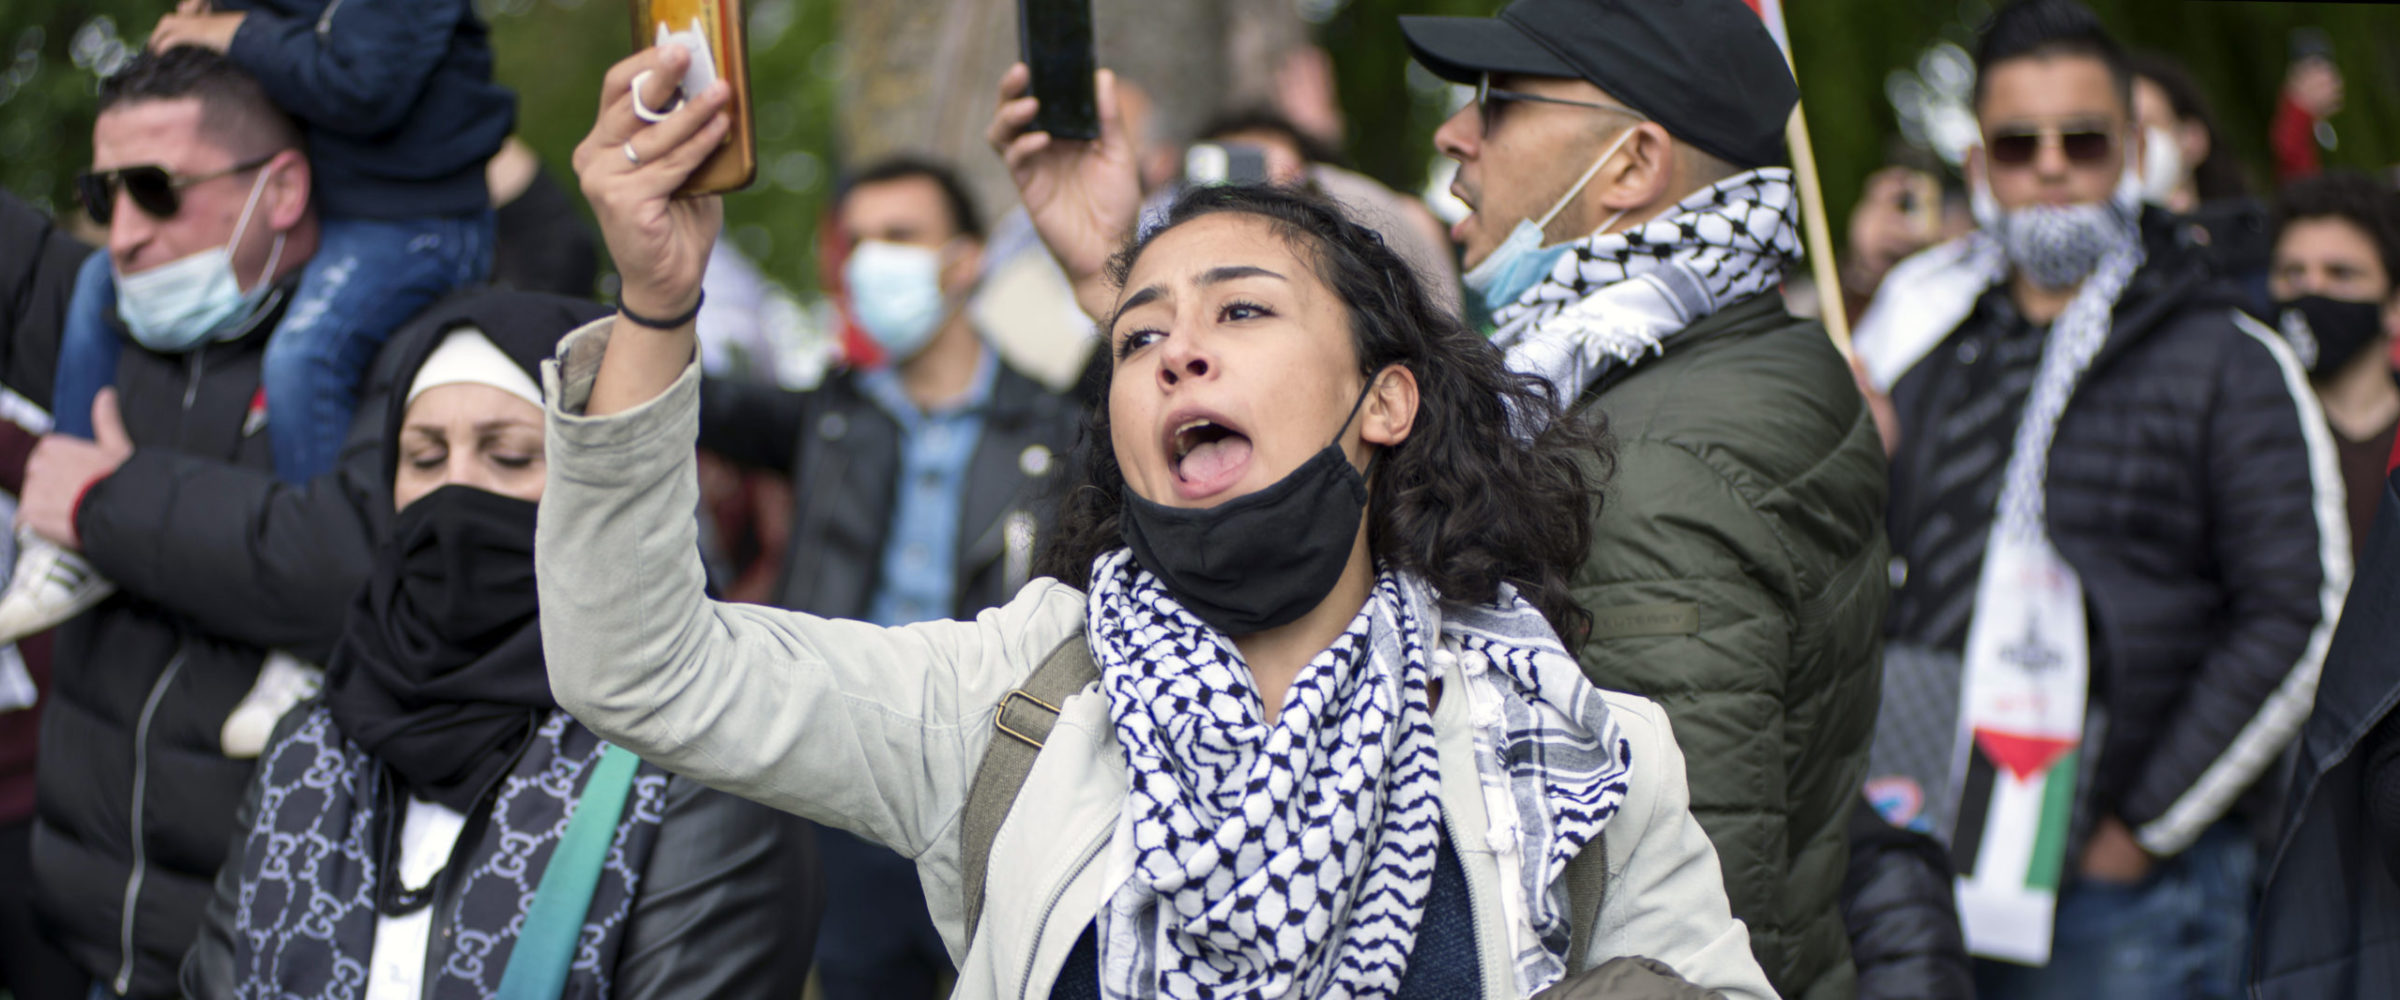 Palestina demonstratie Nijmegen 16mei 2021